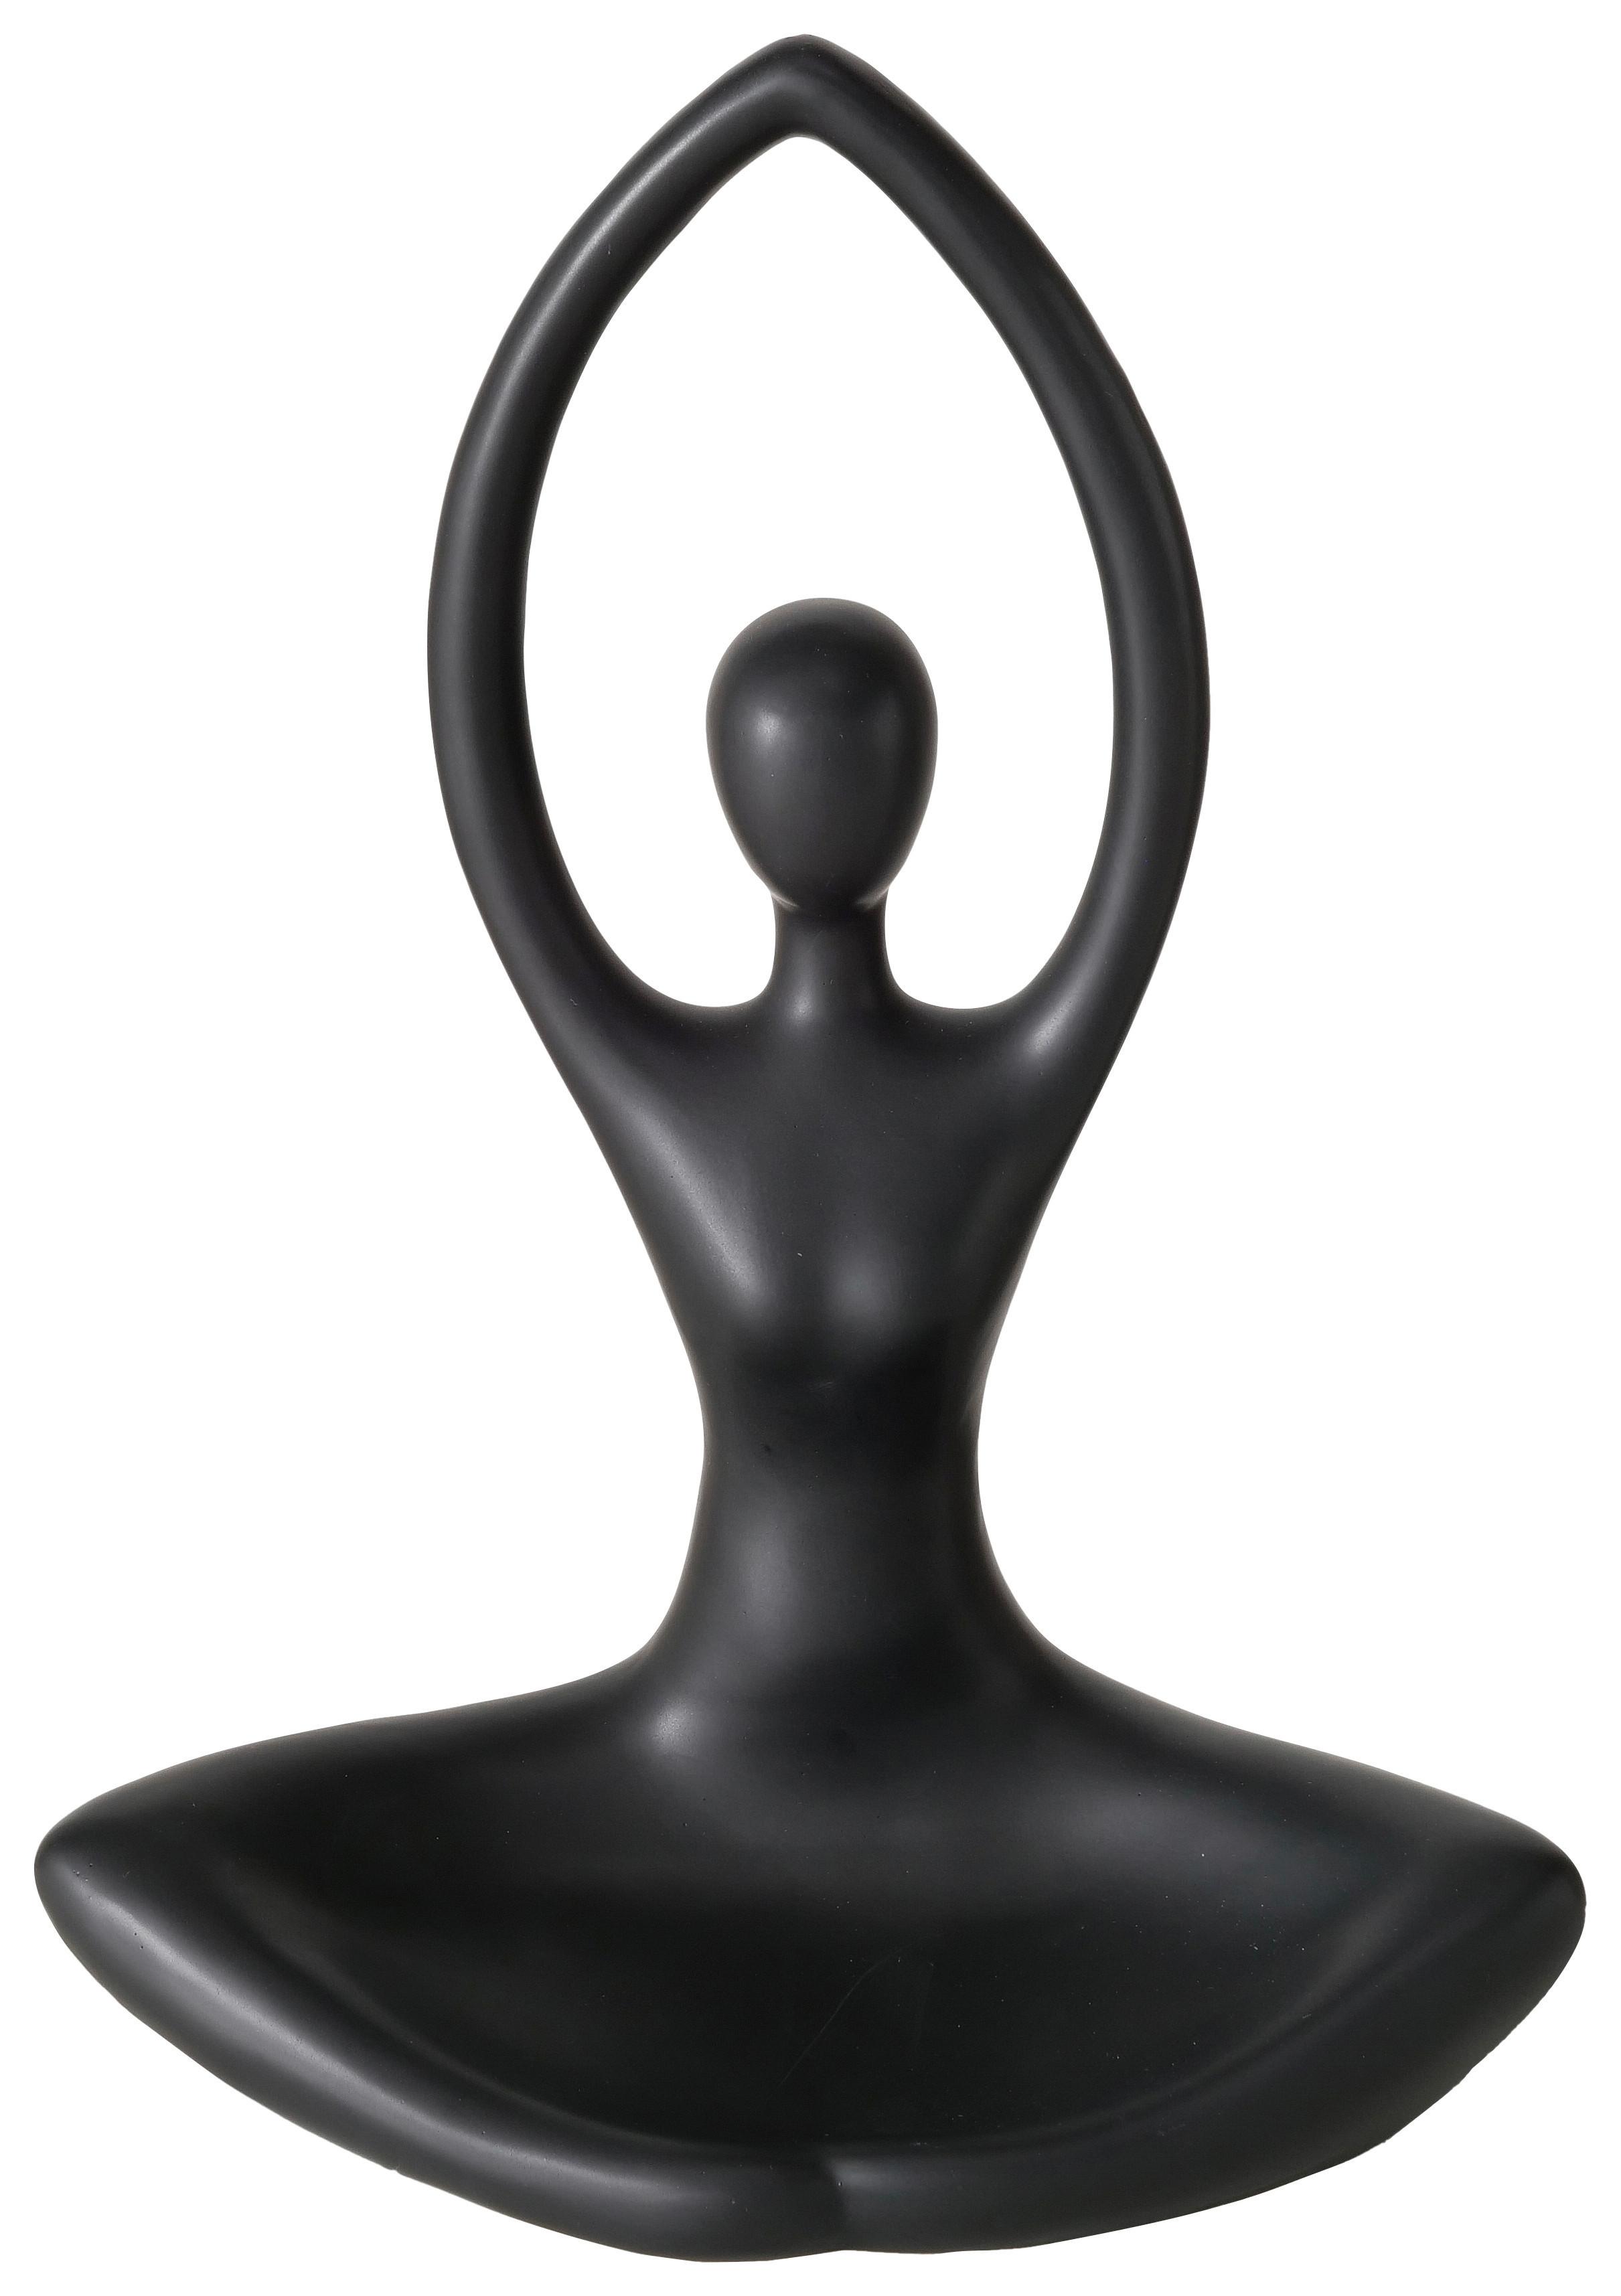 Svícen Na Čajovou Svíčku Yoga I - černá, Basics, keramika (22/30/13cm) - Modern Living